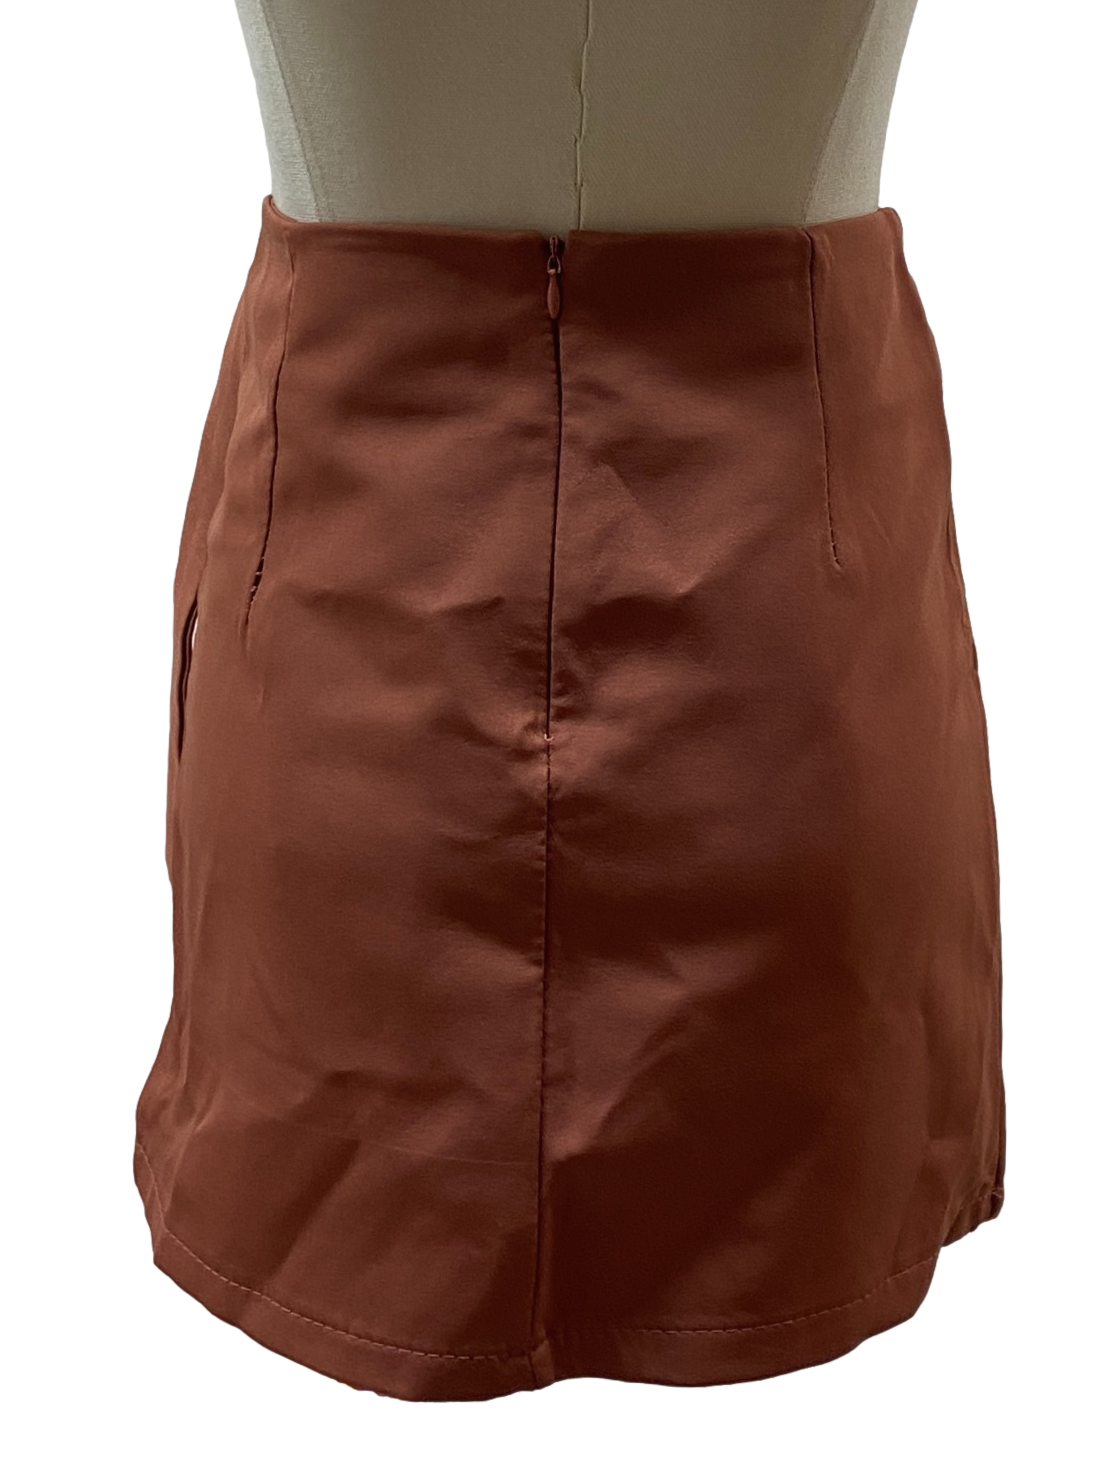 Tangerine Belted Skirt